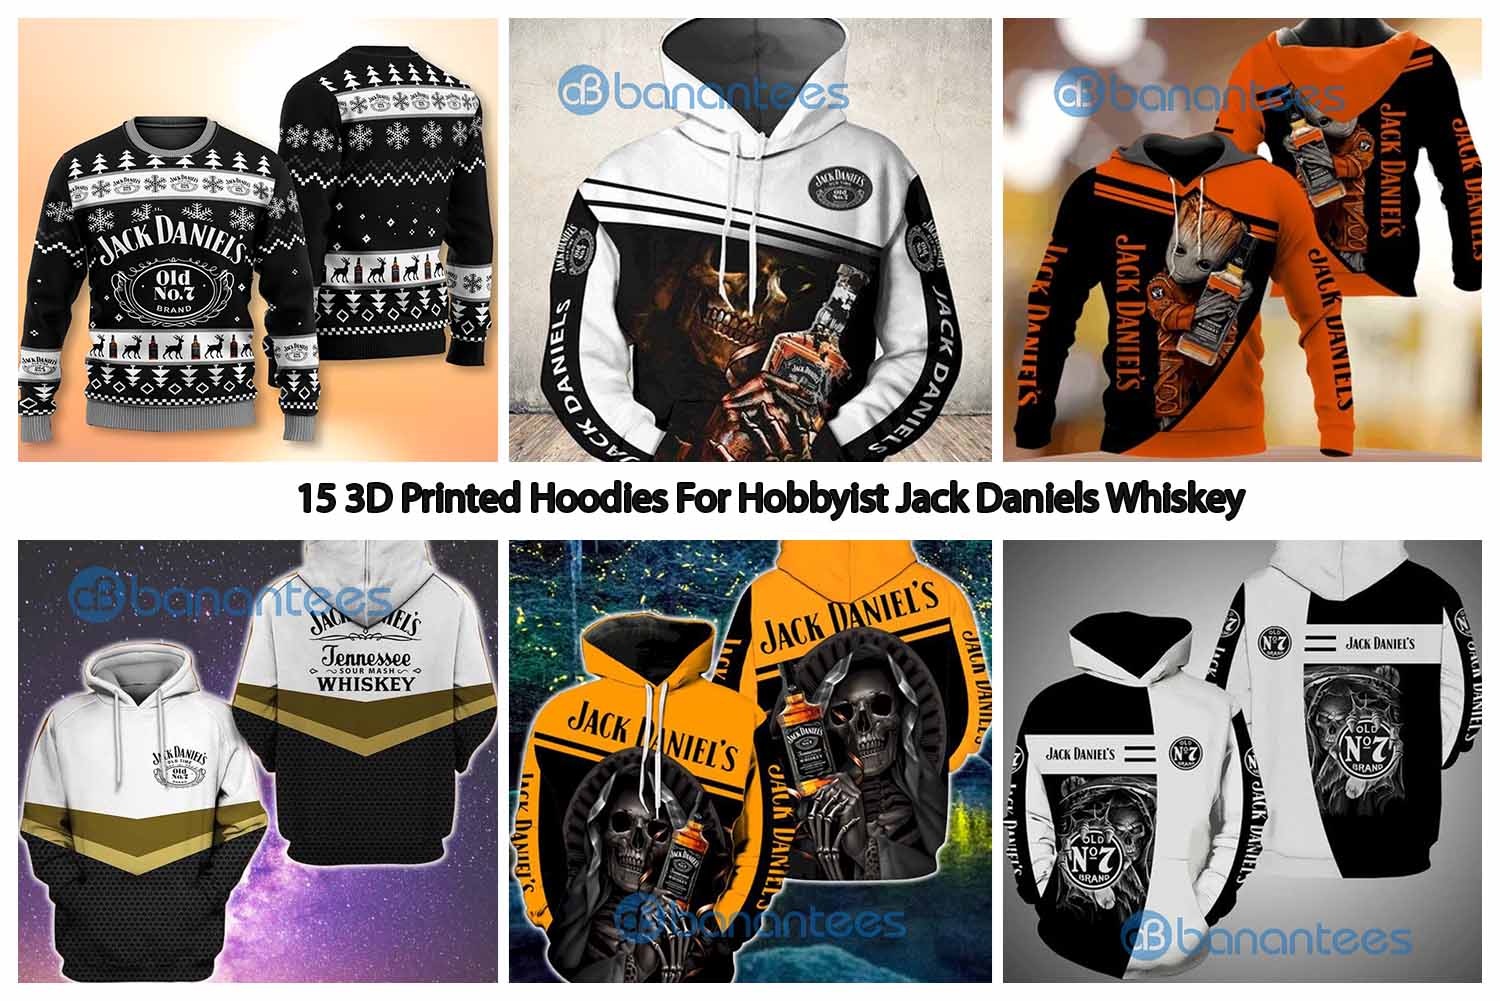 15 3D Printed Hoodies For Hobbyist Jack Daniels Whiskey